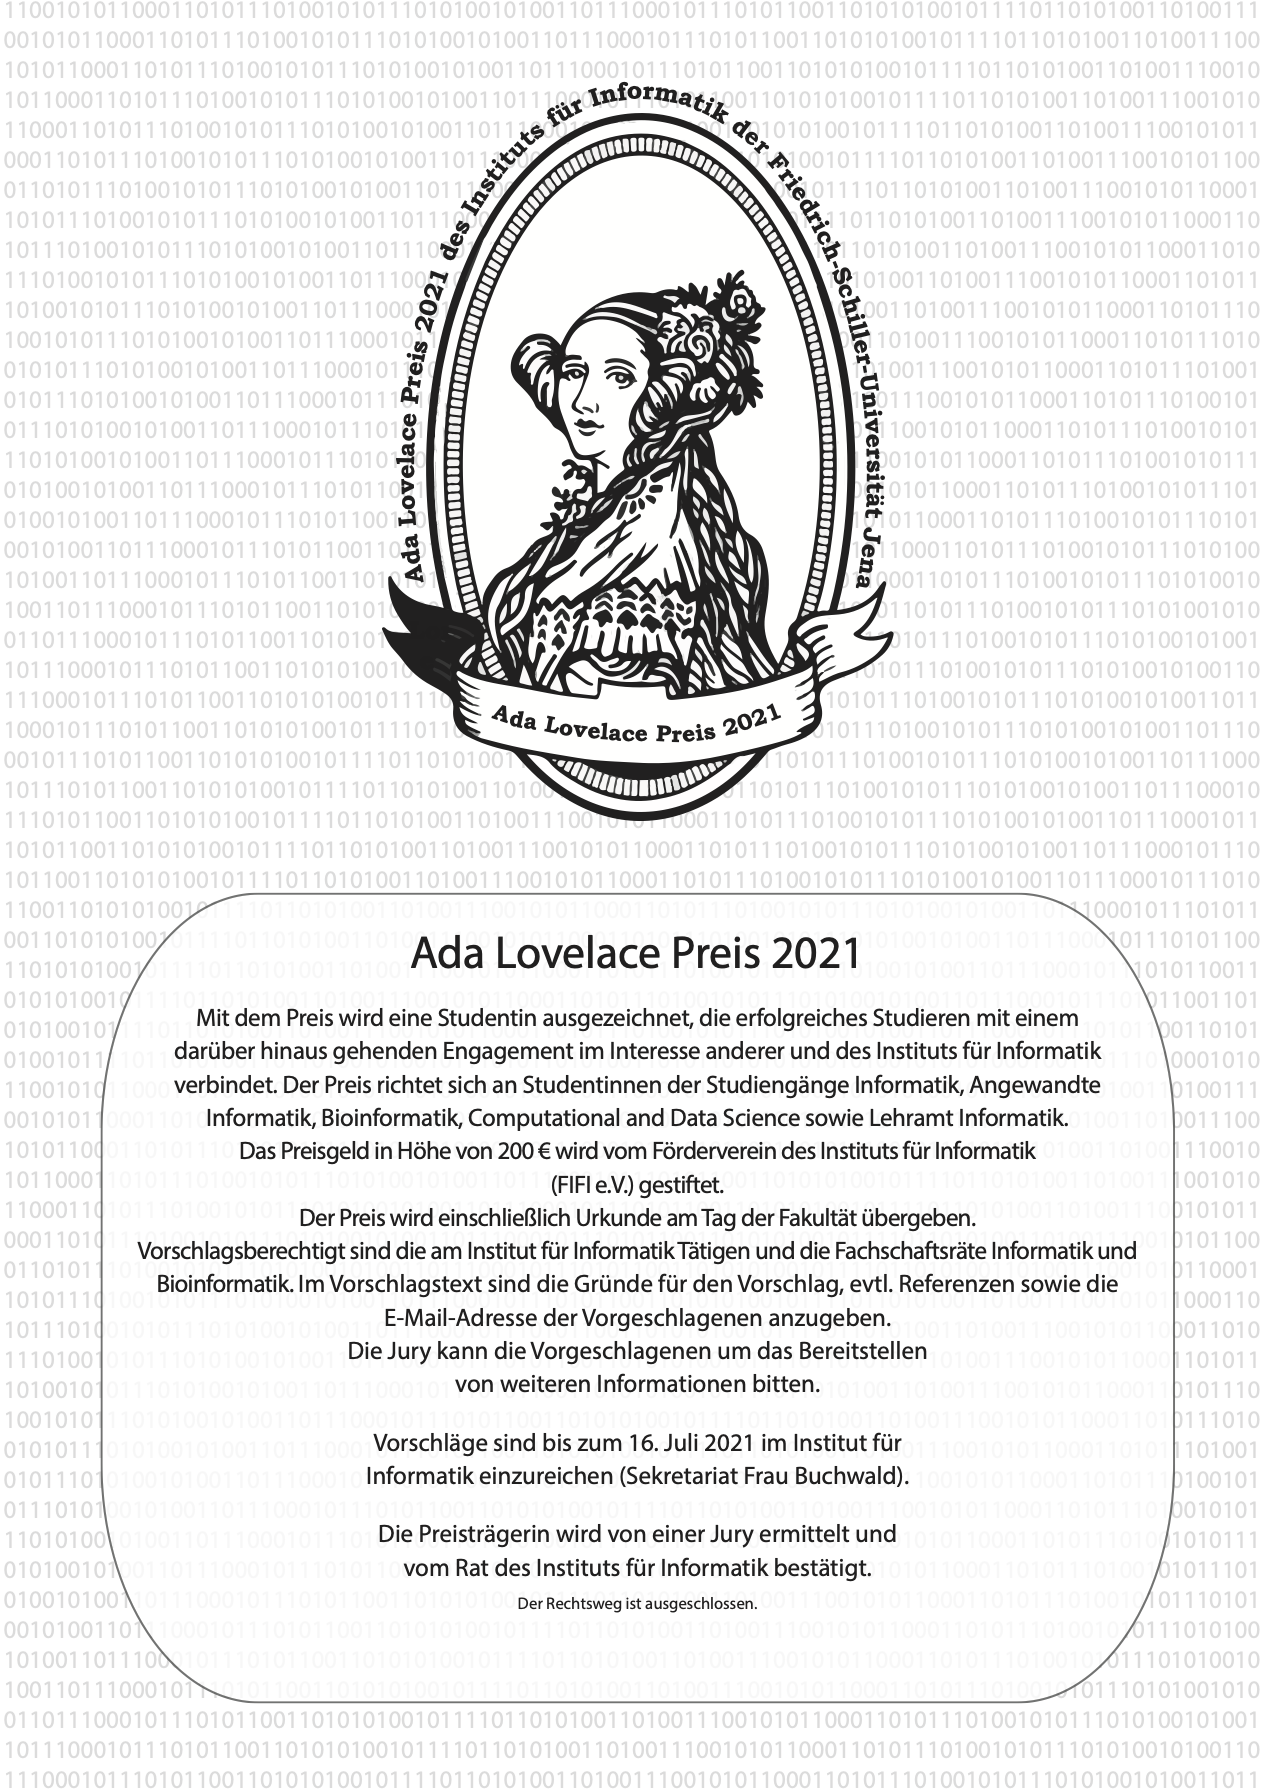 Ausschreibung Ada-Lovelace-Preis 2021